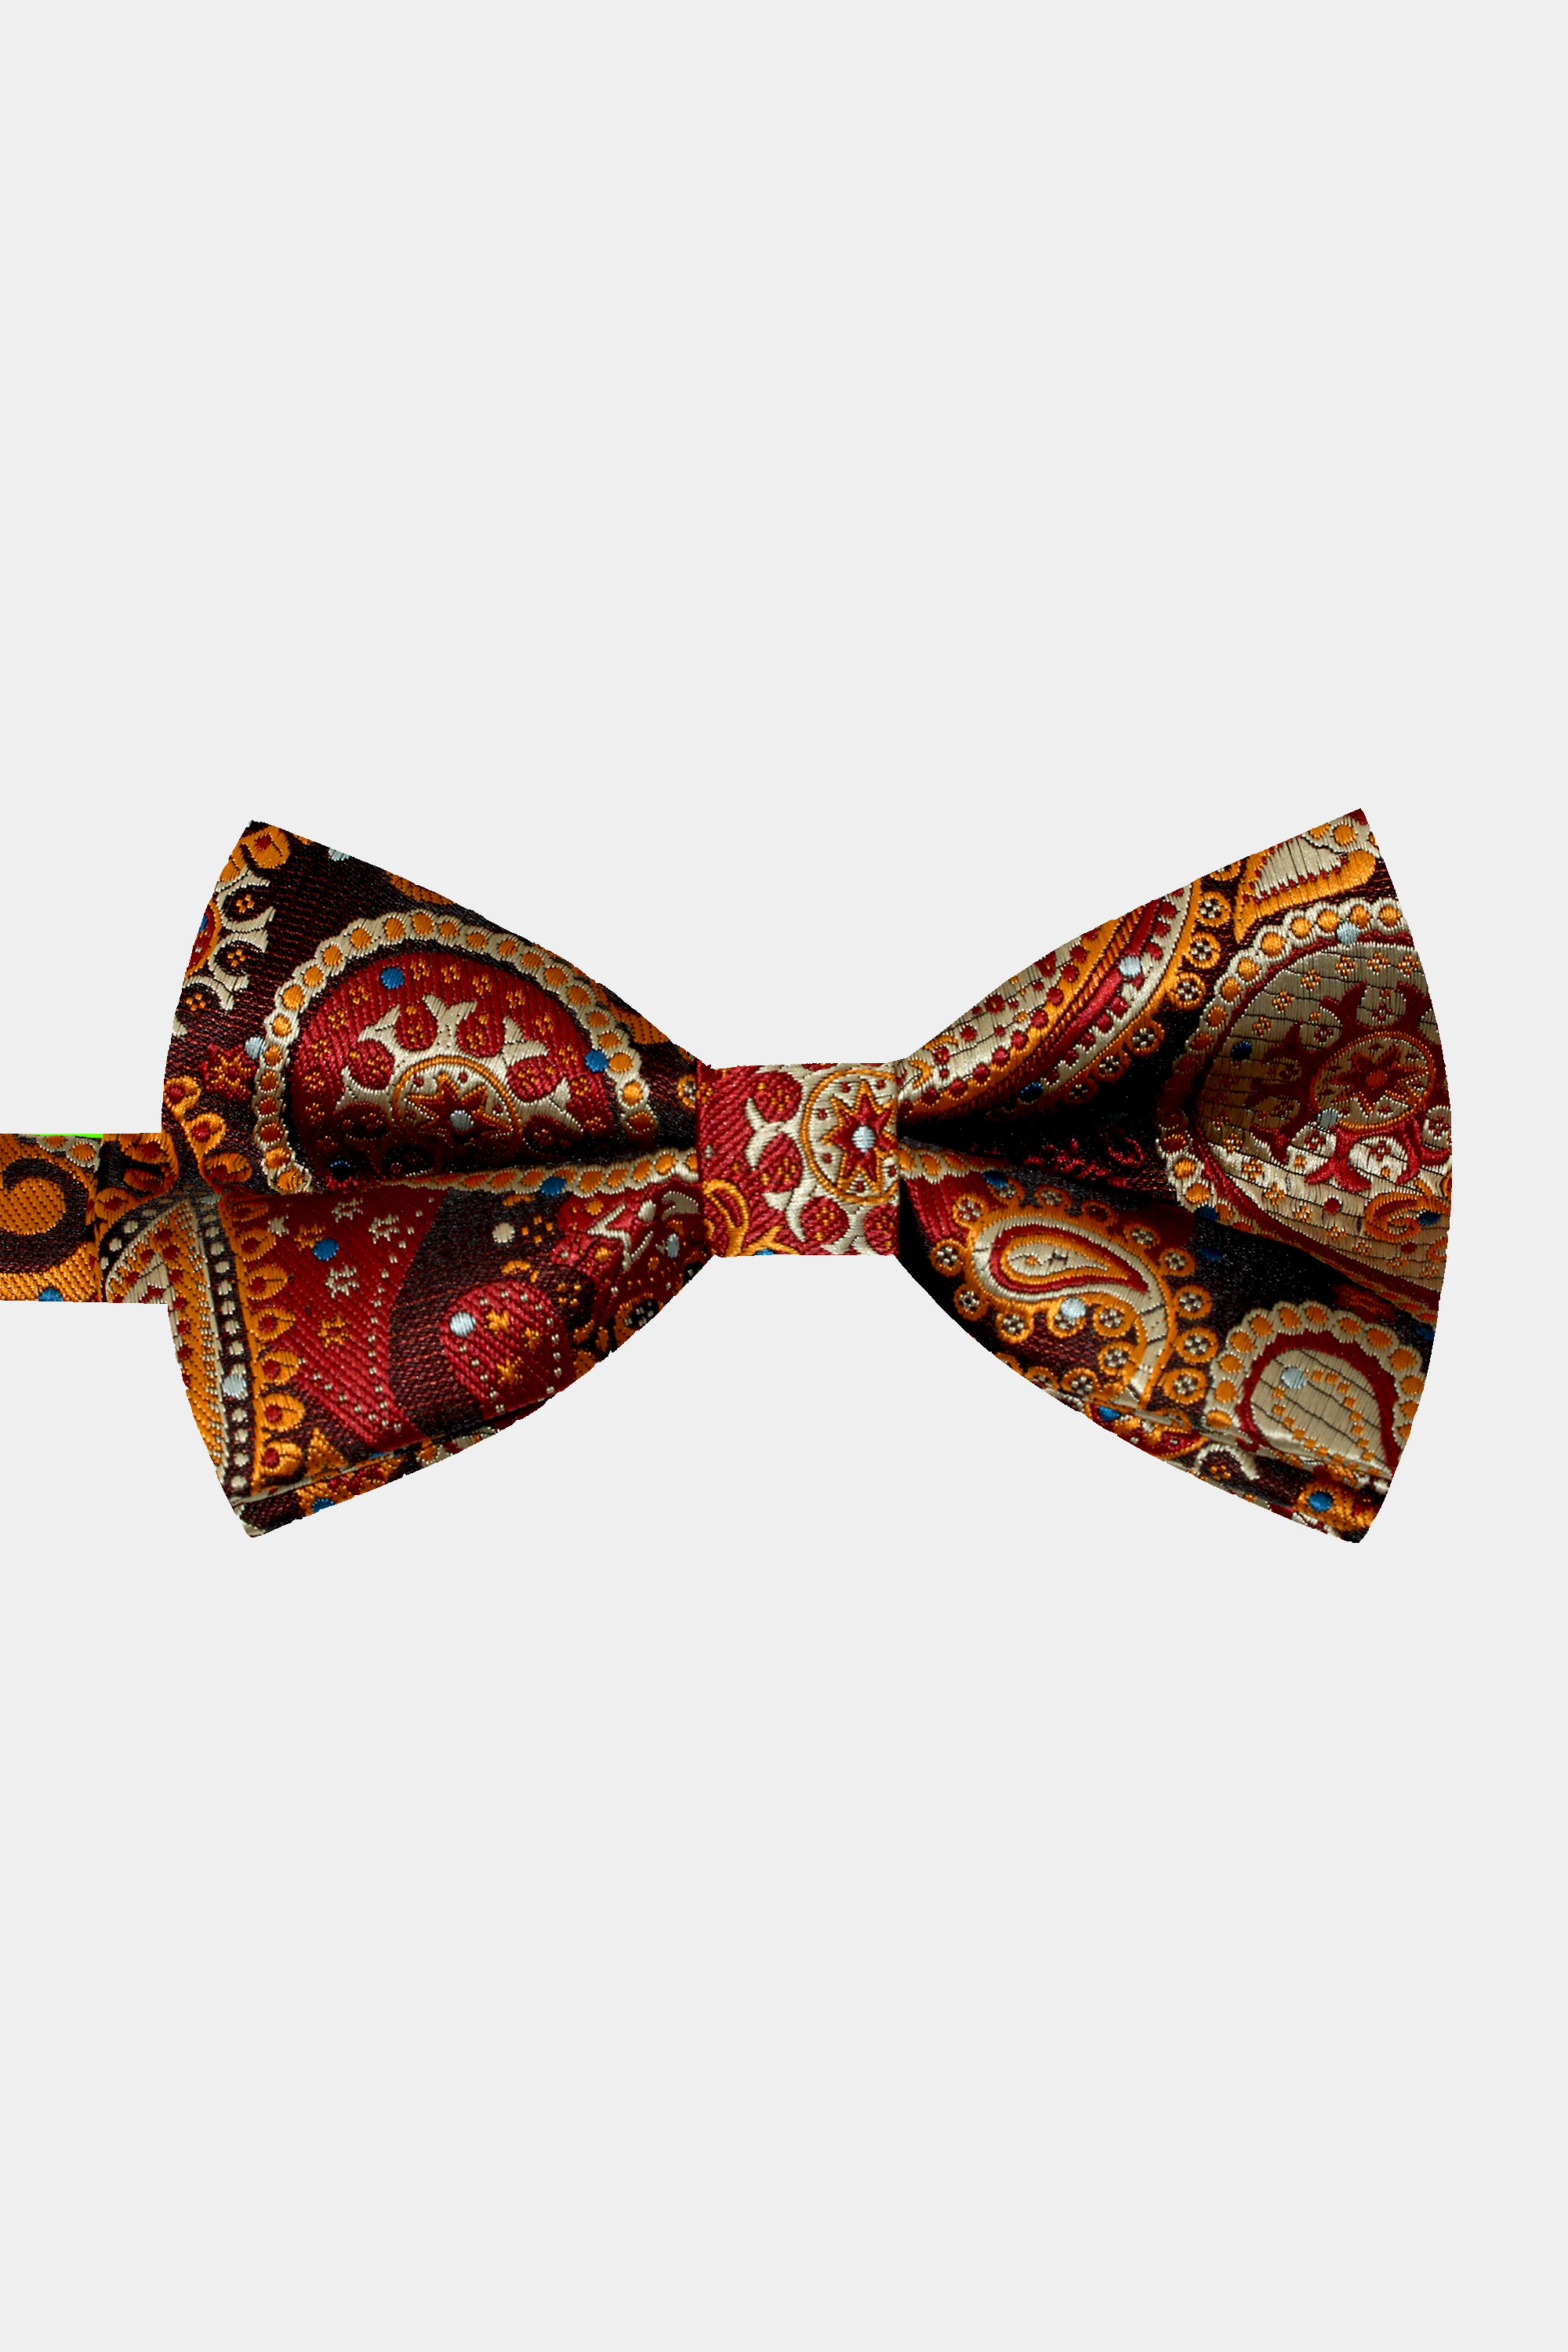 Paisley-Burnt-Orange-Bow-Tie-from-Gentlemansguru.com